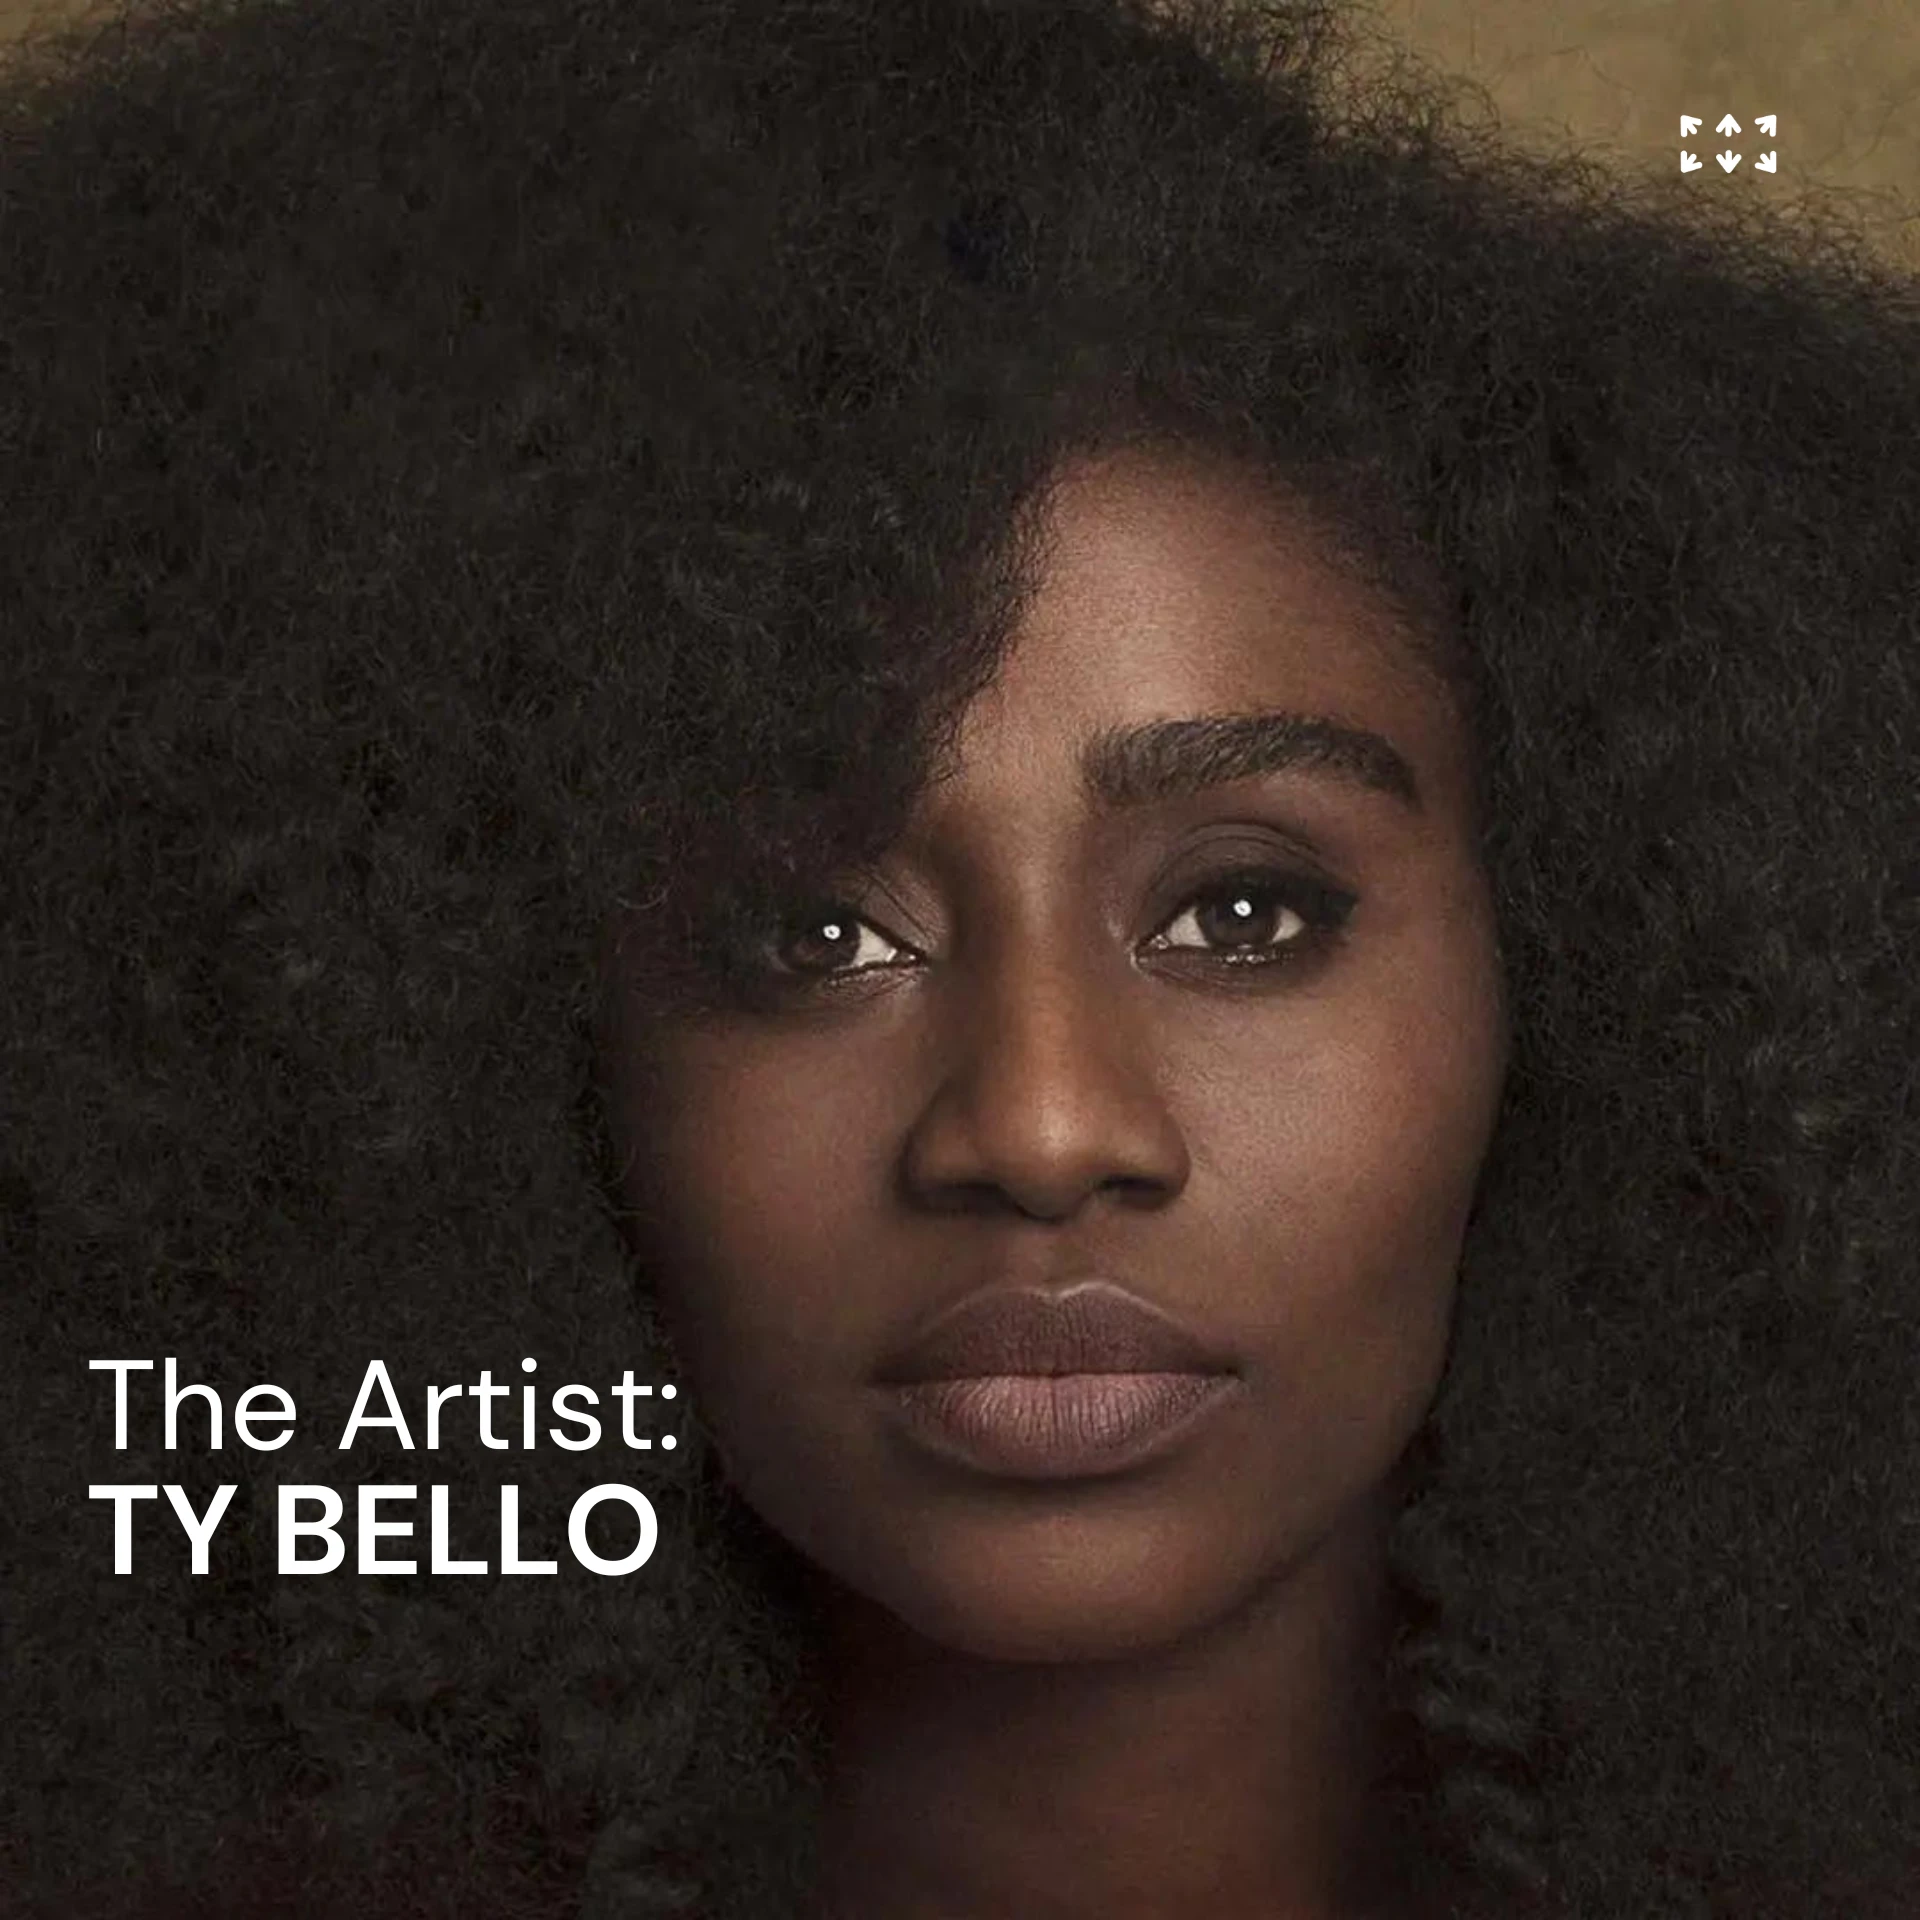 Meet the artist TY BELLO